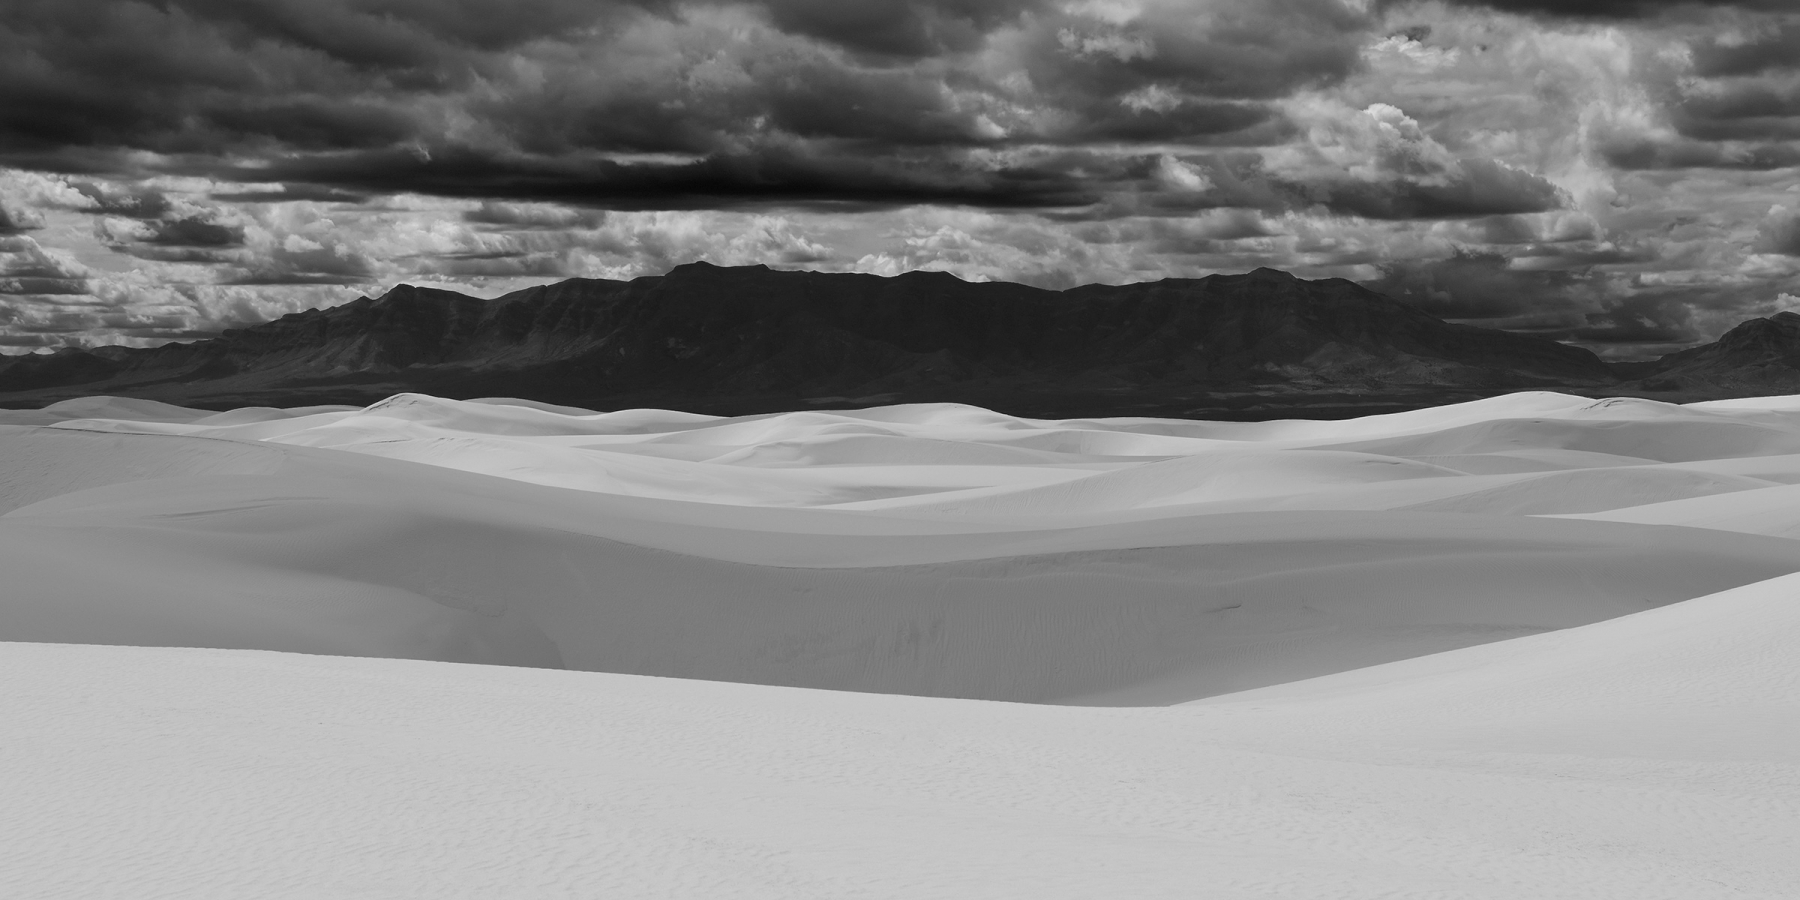 White Sands National Park (Nouveau Mexique, USA) - Jeux de lumière et d'ombre sur les dunes de sable blanc avec montagne sombre en fond et ciel nuageux (photo noir & blanc)